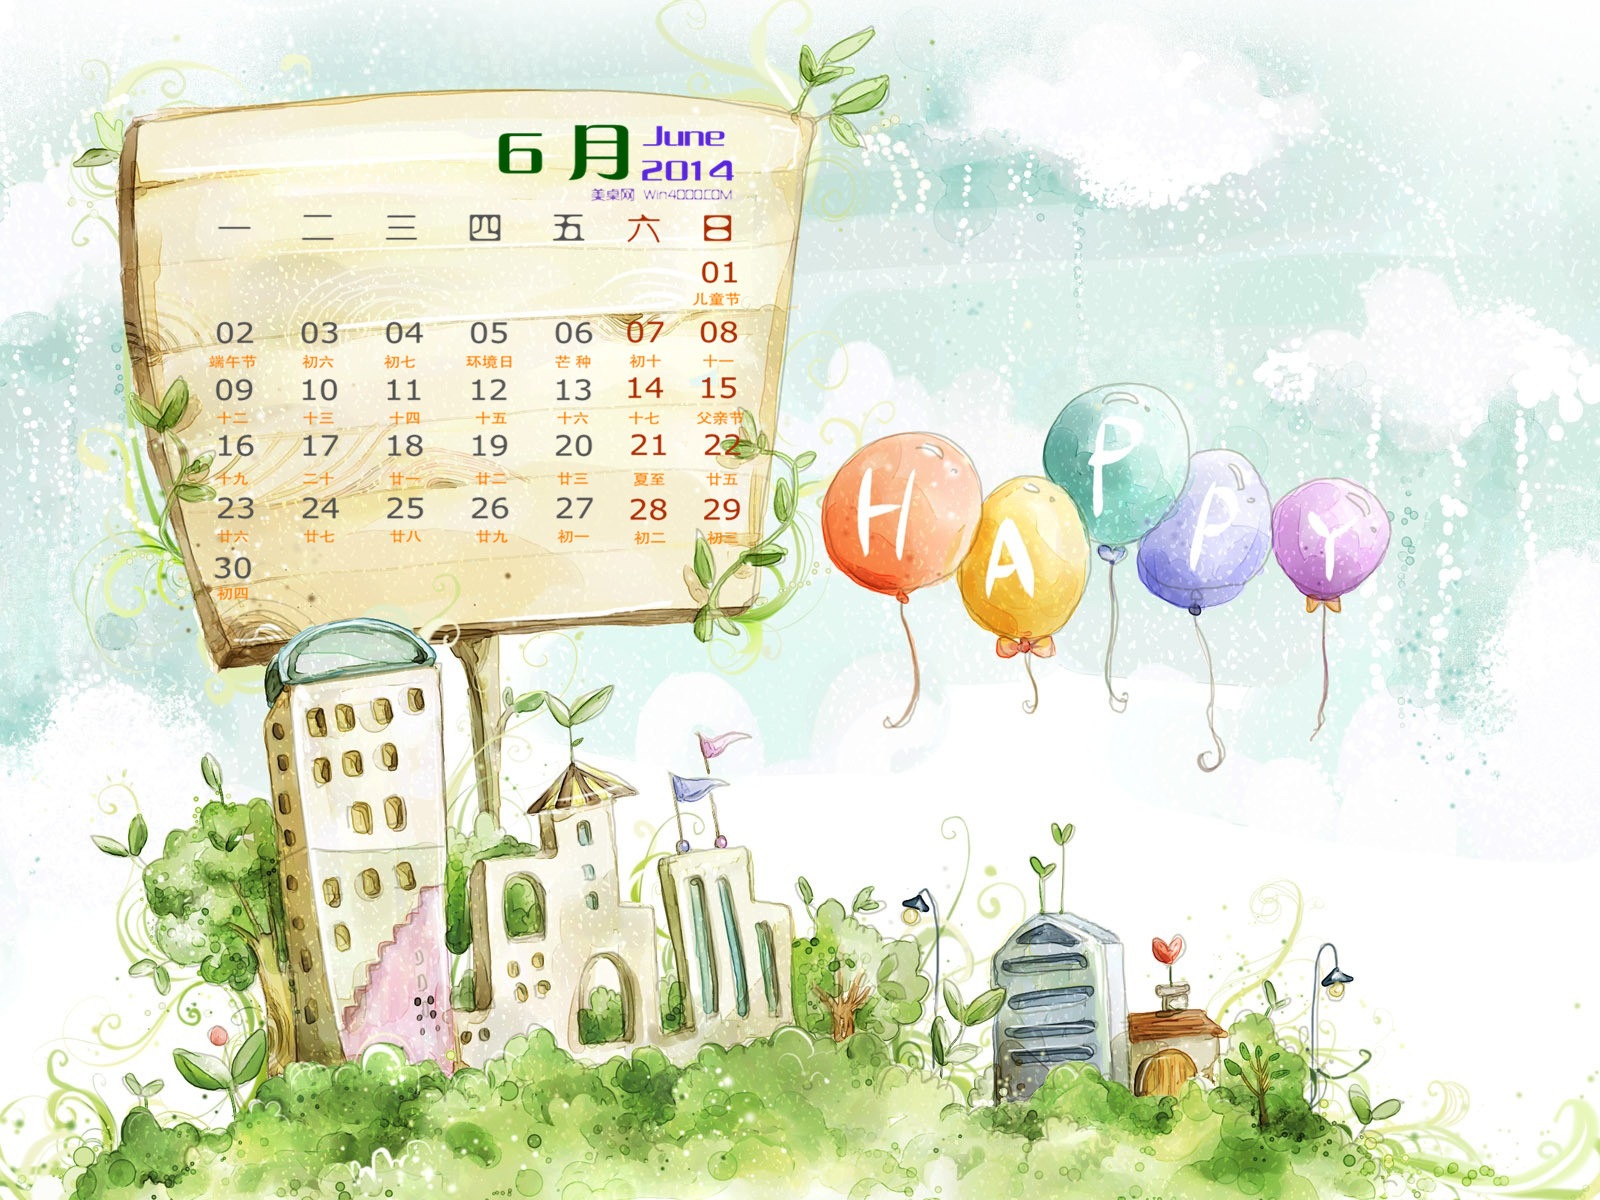 06 2014 fondos de escritorio calendario (1) #11 - 1600x1200